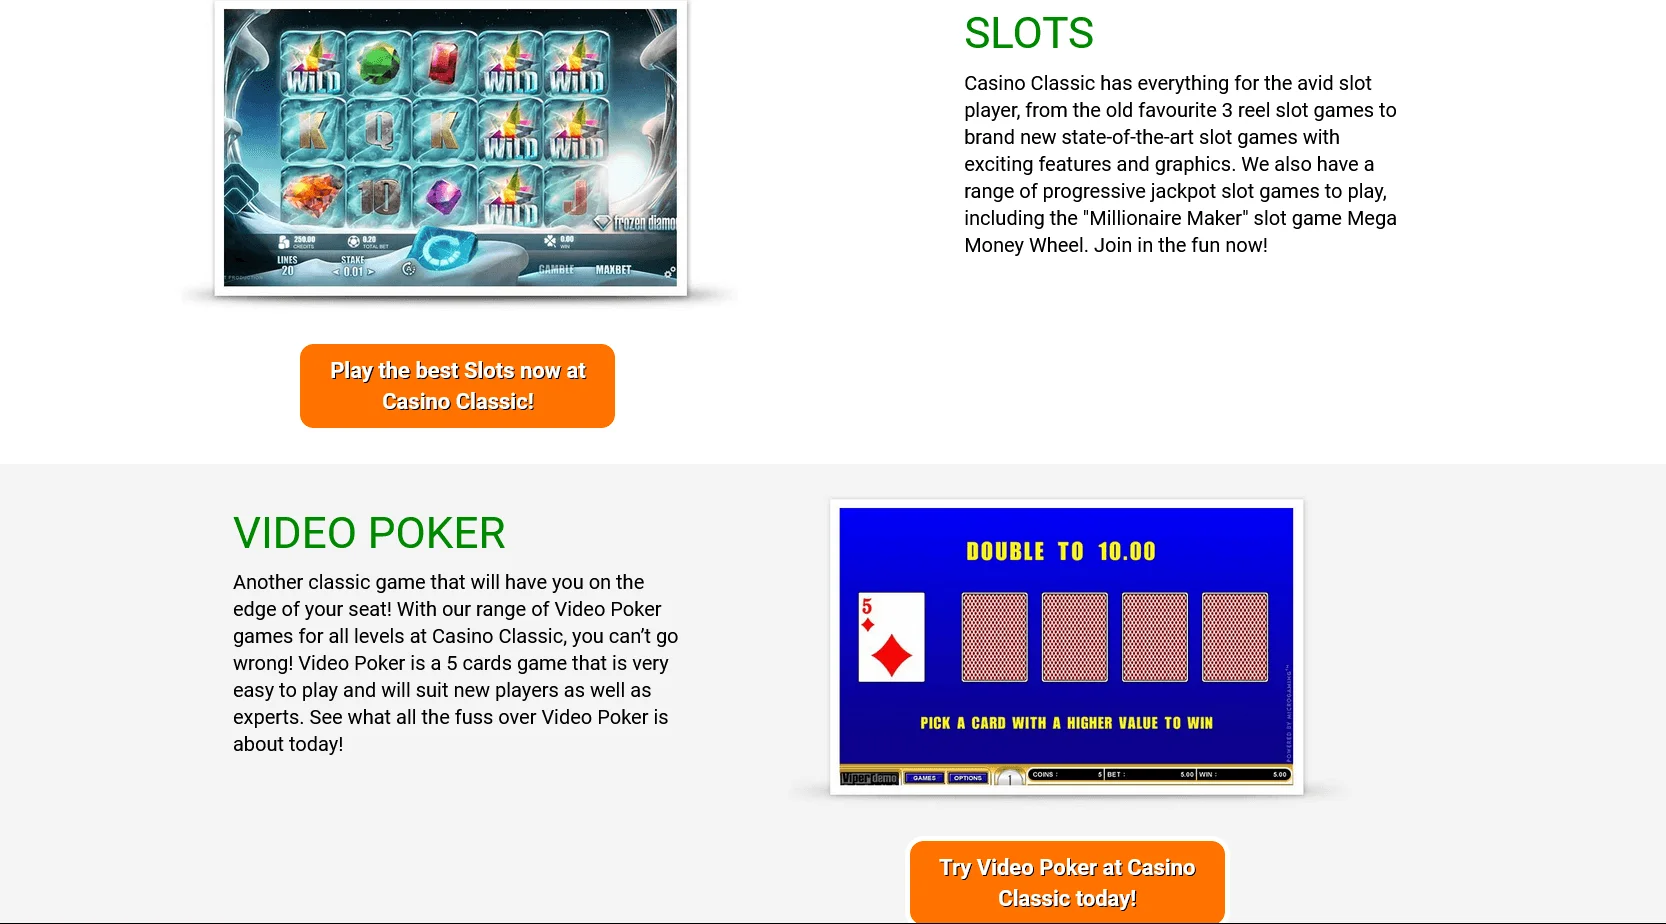 Bonusy a programy vernosti v online kasíne Casino Classic